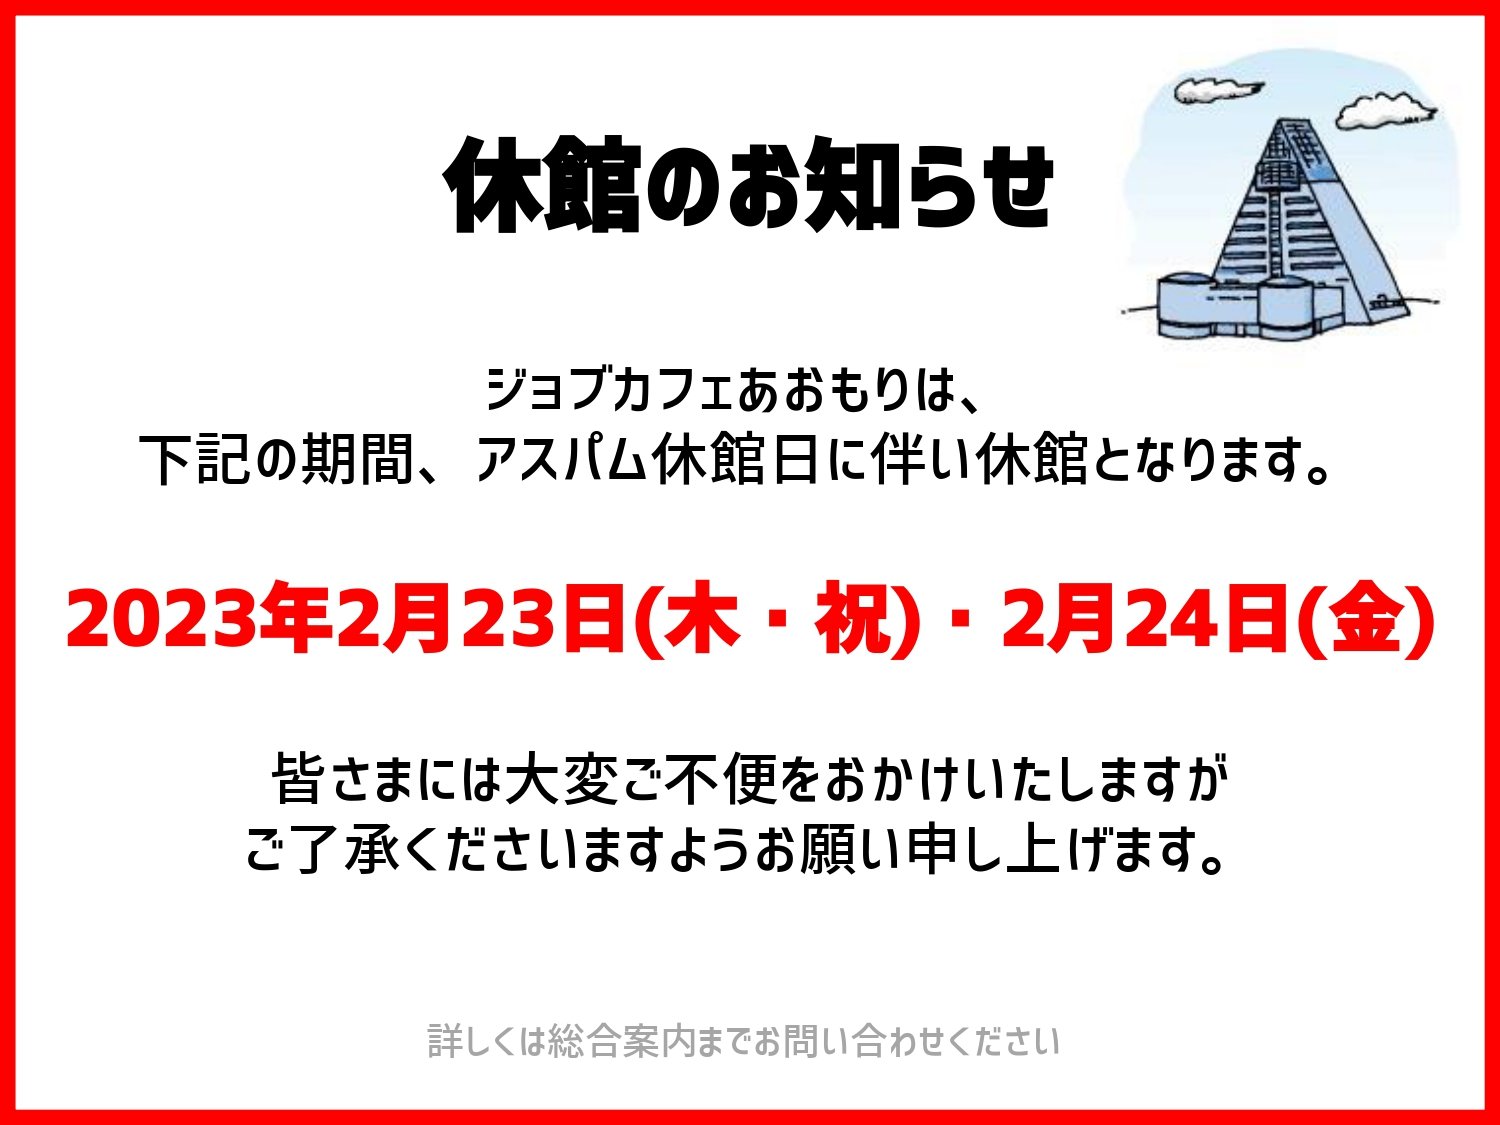 休館のお知らせ(2023年2月).jpg